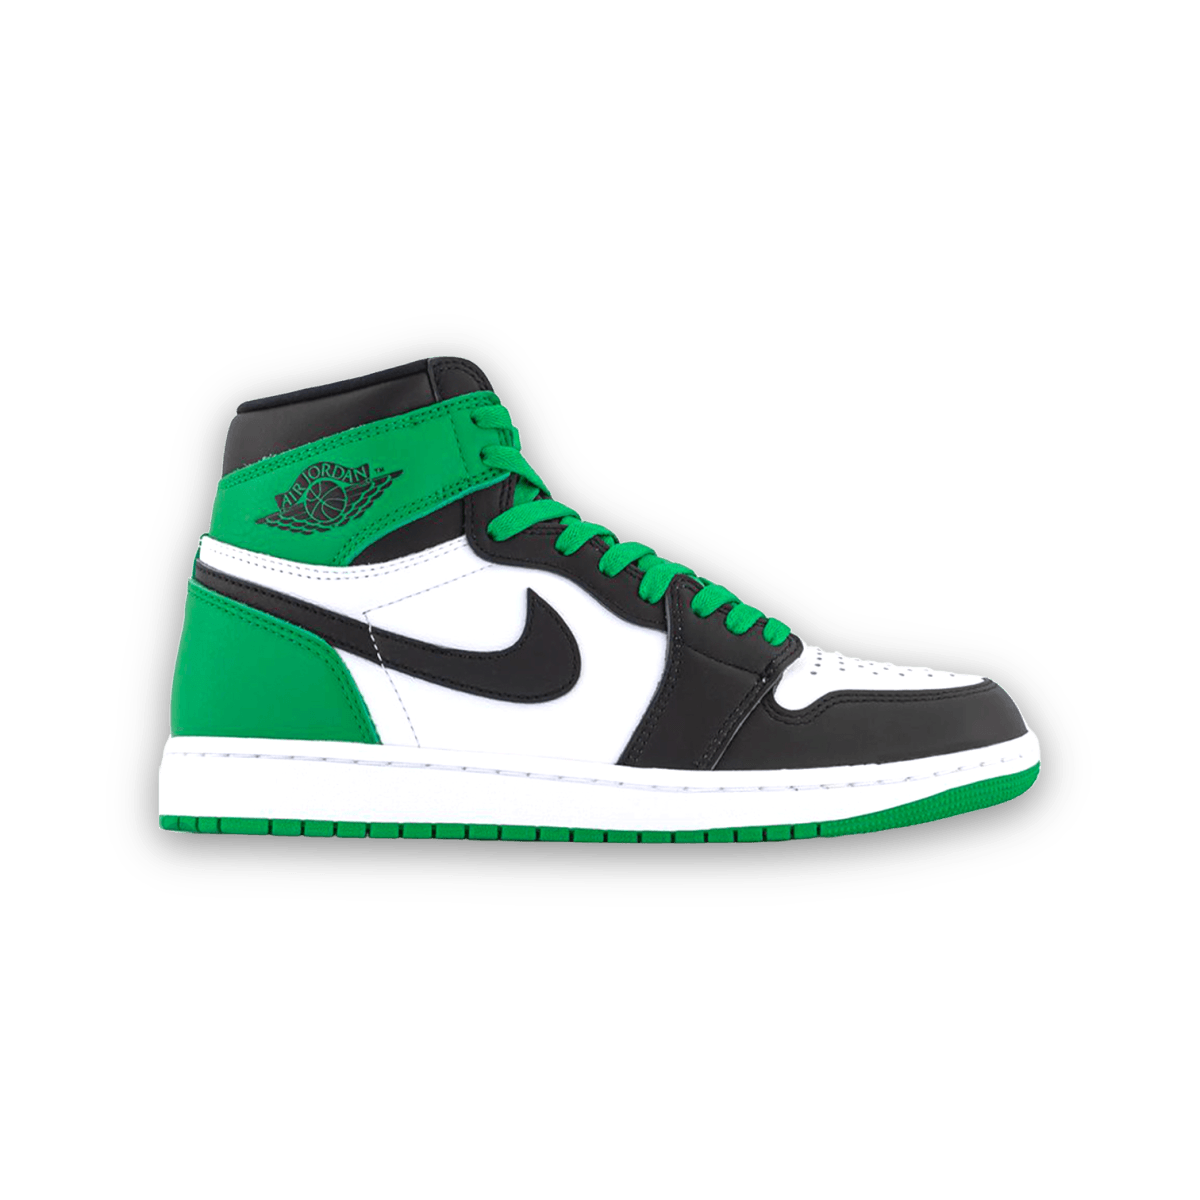 Air Jordan 1 High OG Lucky Green - High Sneaker - Jordan - Jawns on Fire